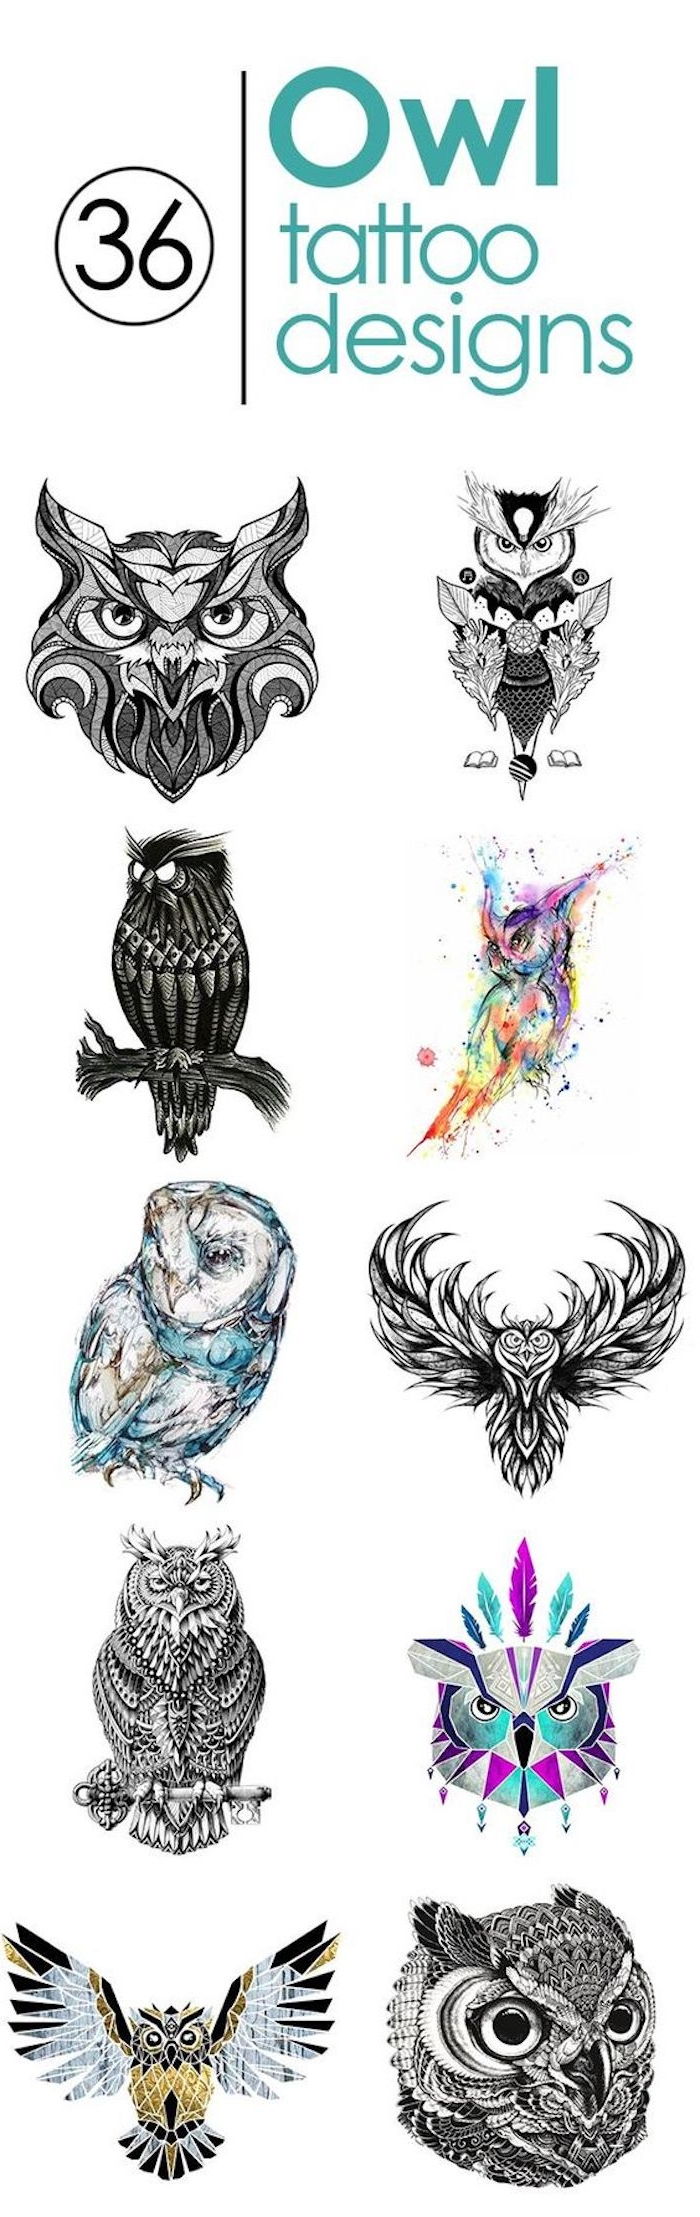 hier zijn kleine zwarte tatoeages met uilen en uhus - verschillende ideeën die je echt leuk vindt